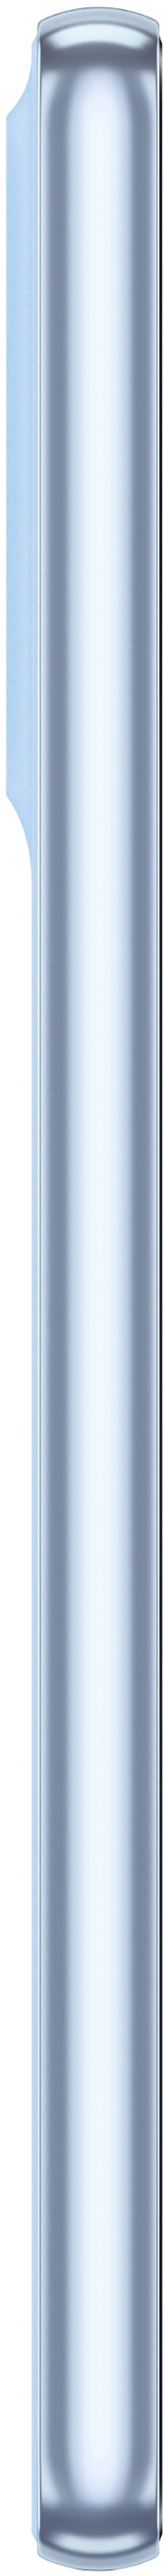 Samsung Galaxy A53 5G 128GB Dual-SIM Blå